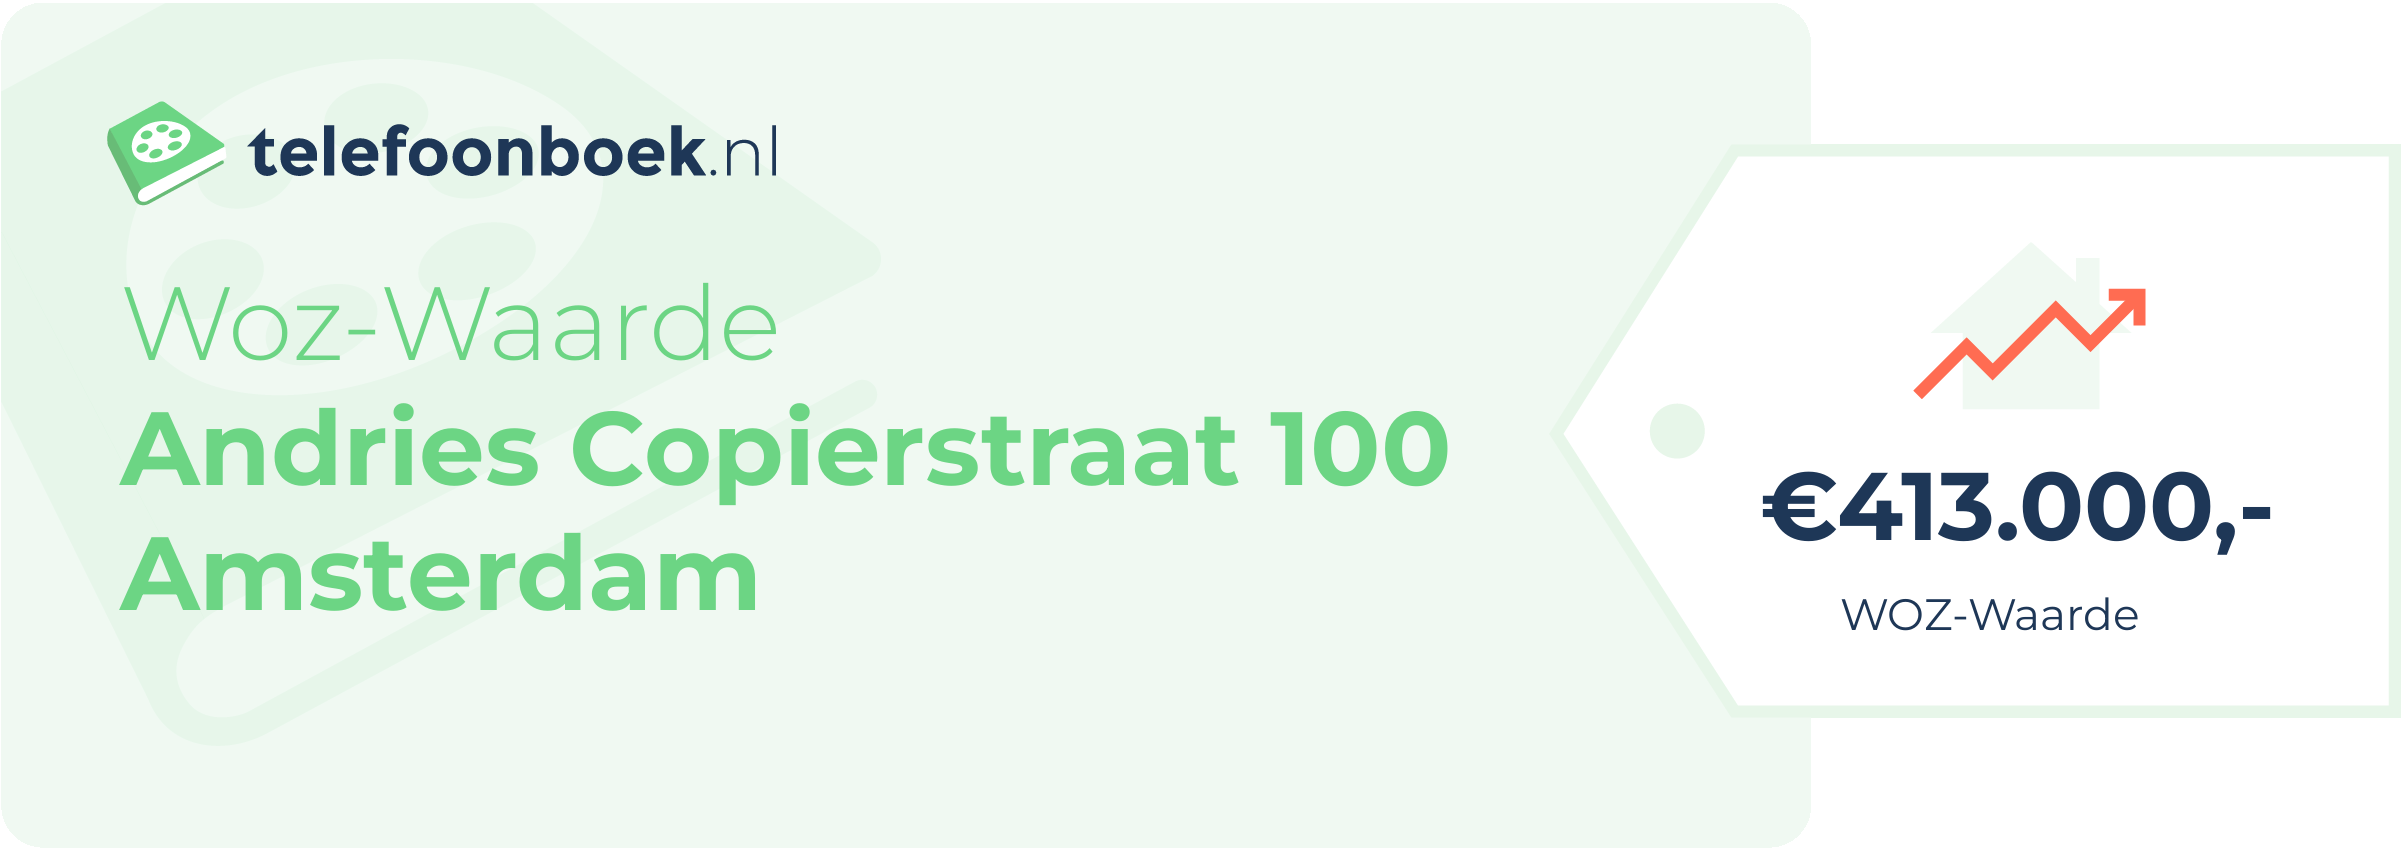 WOZ-waarde Andries Copierstraat 100 Amsterdam